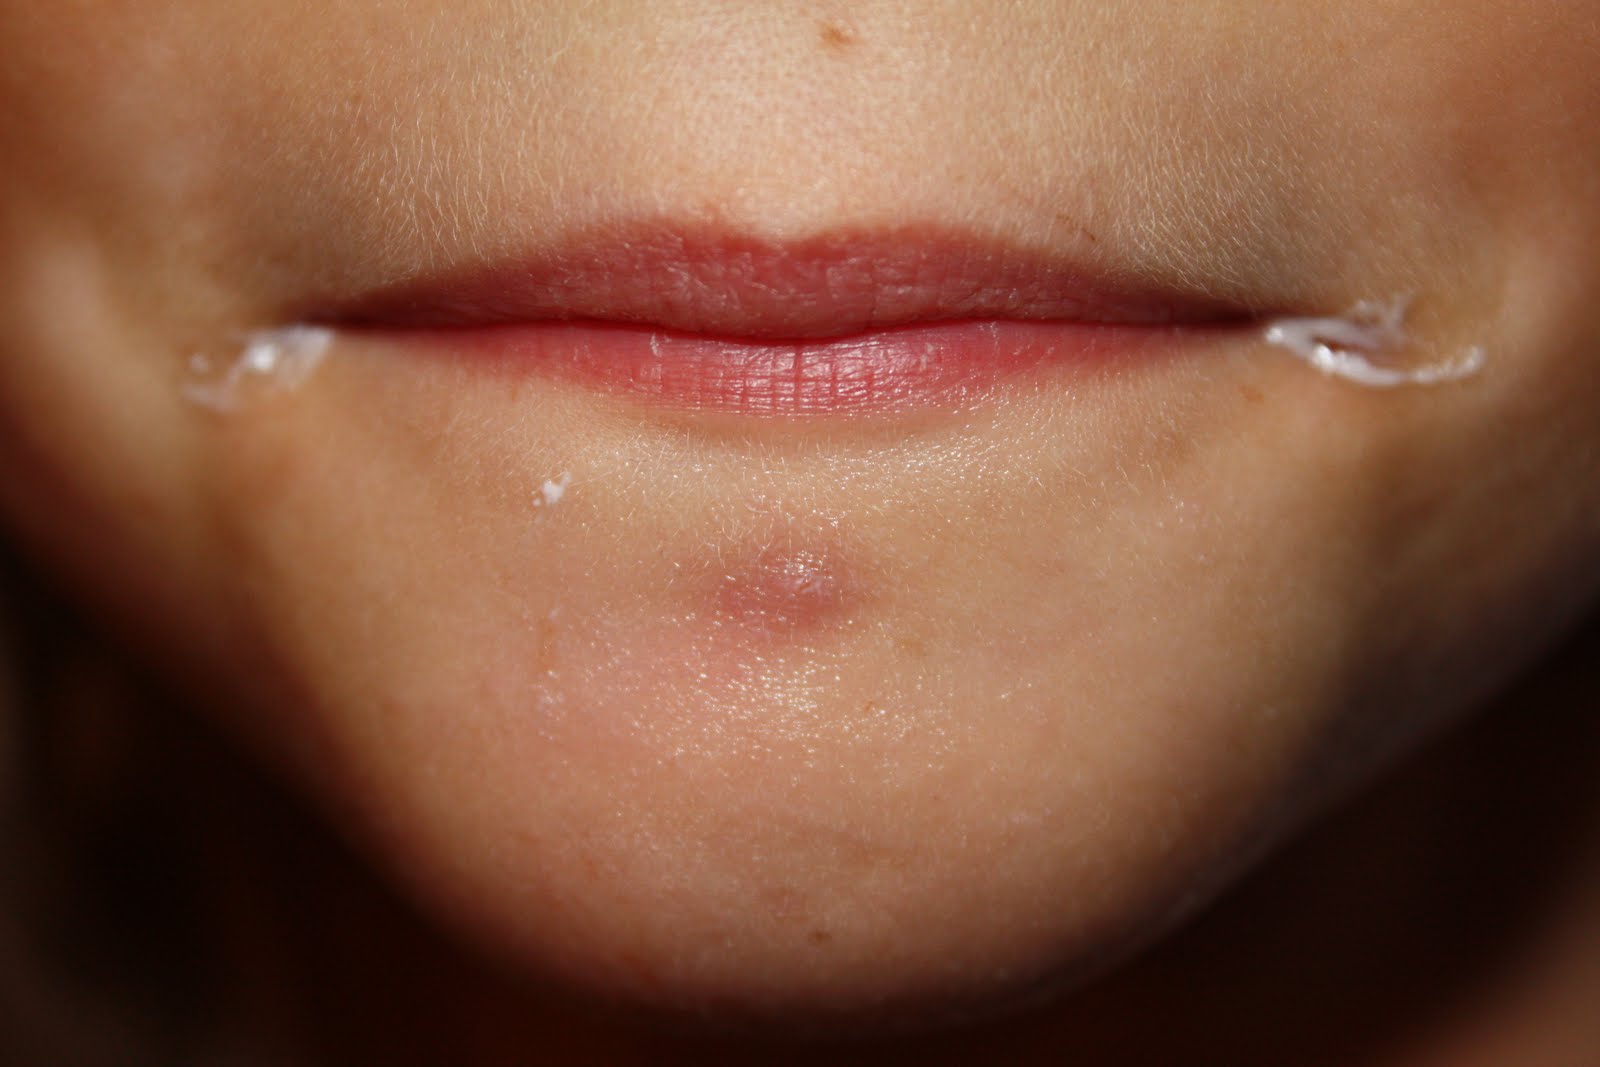 аллергия вокруг рта фото